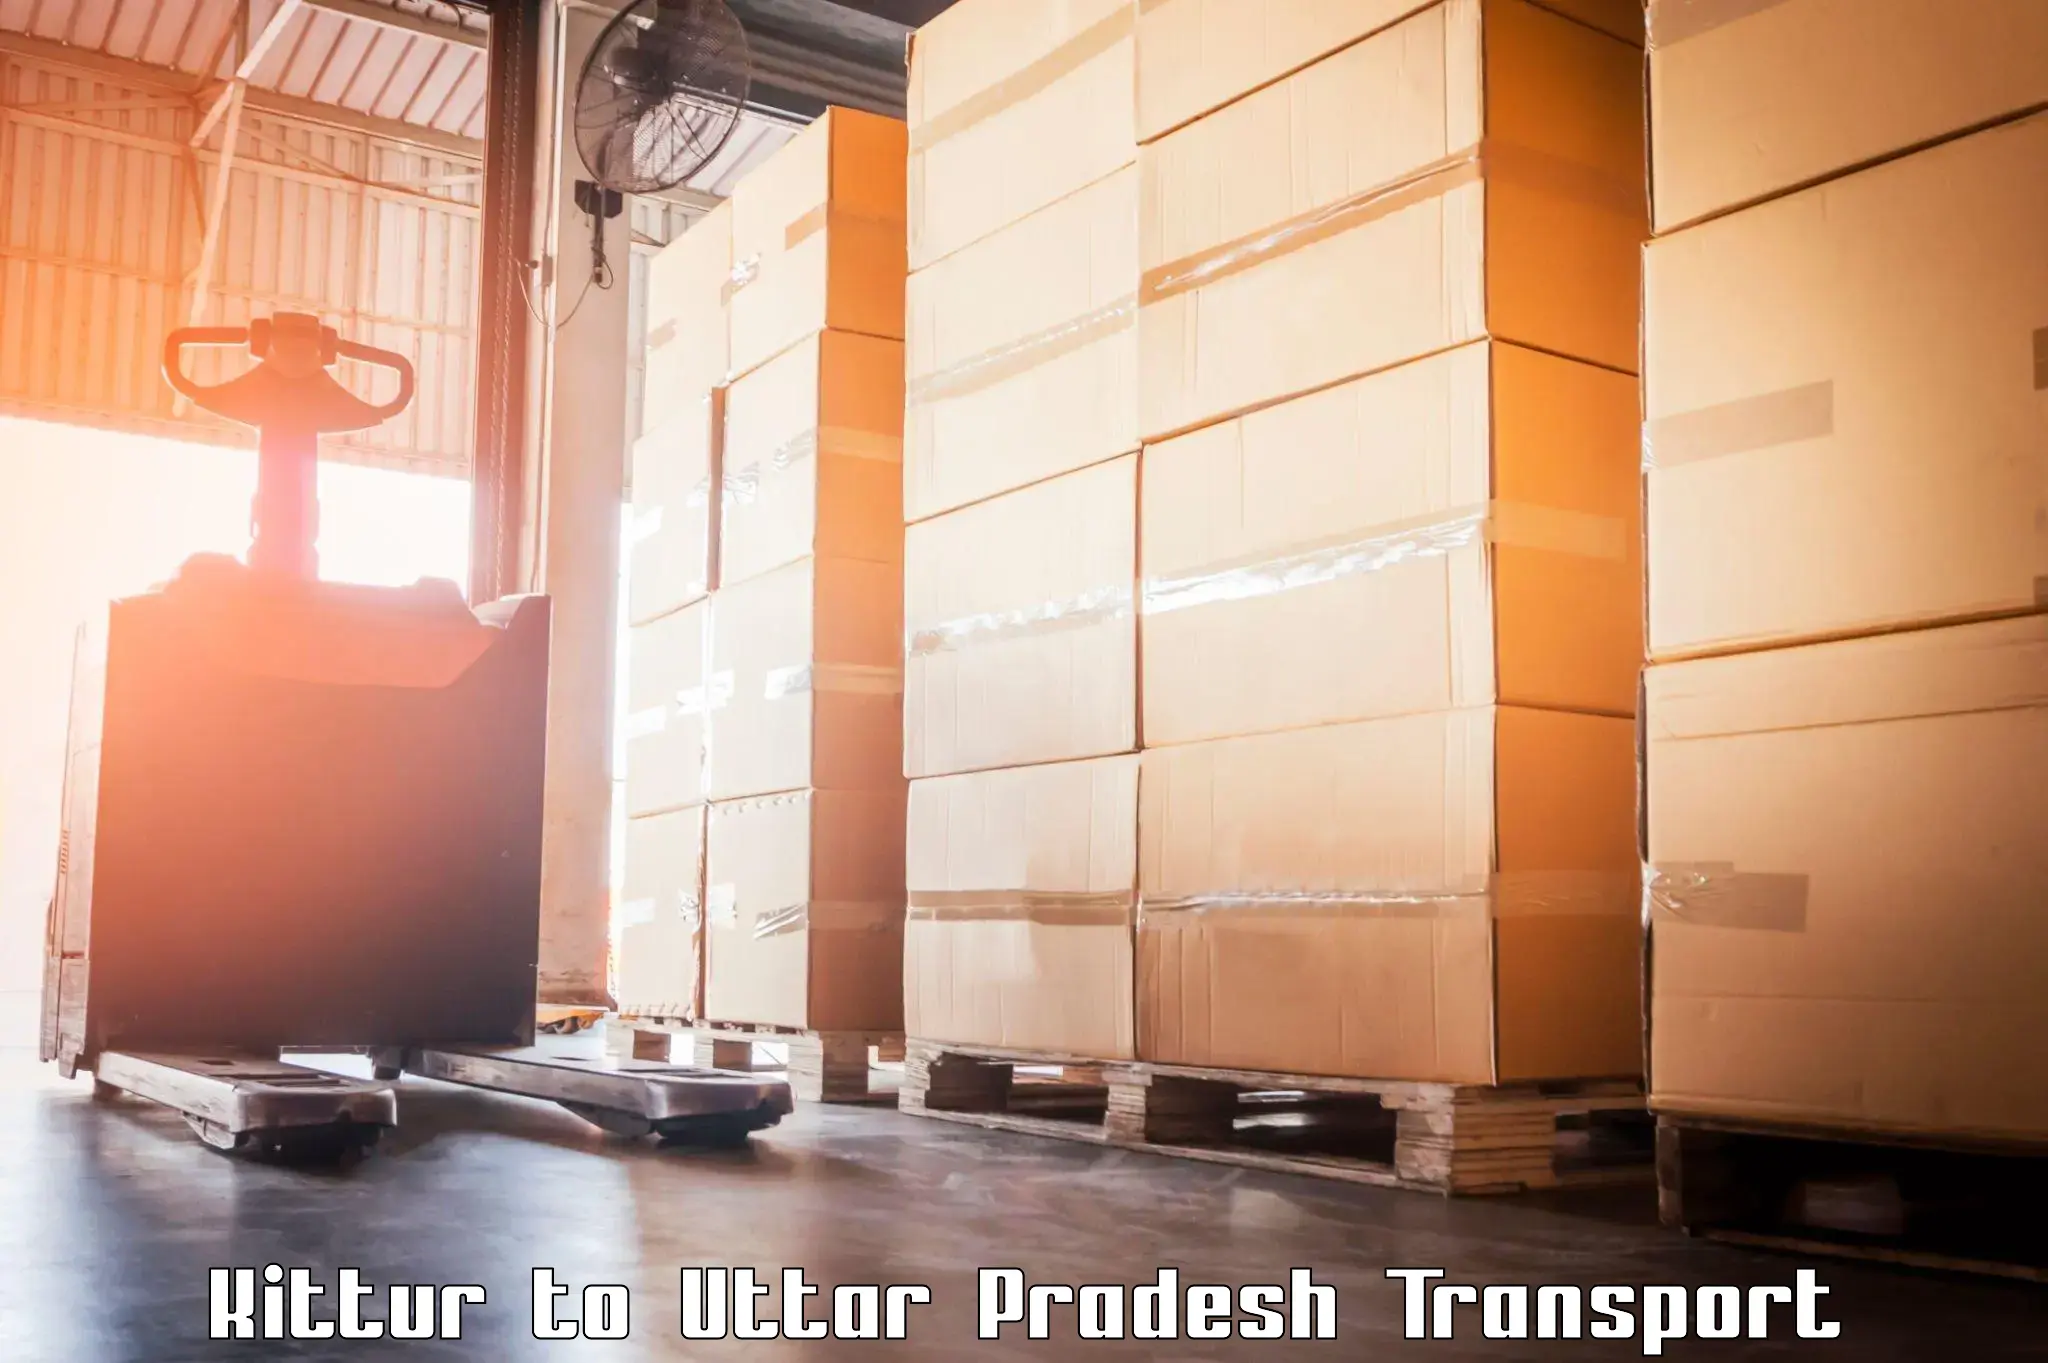 Goods transport services in Kittur to Kheragarh